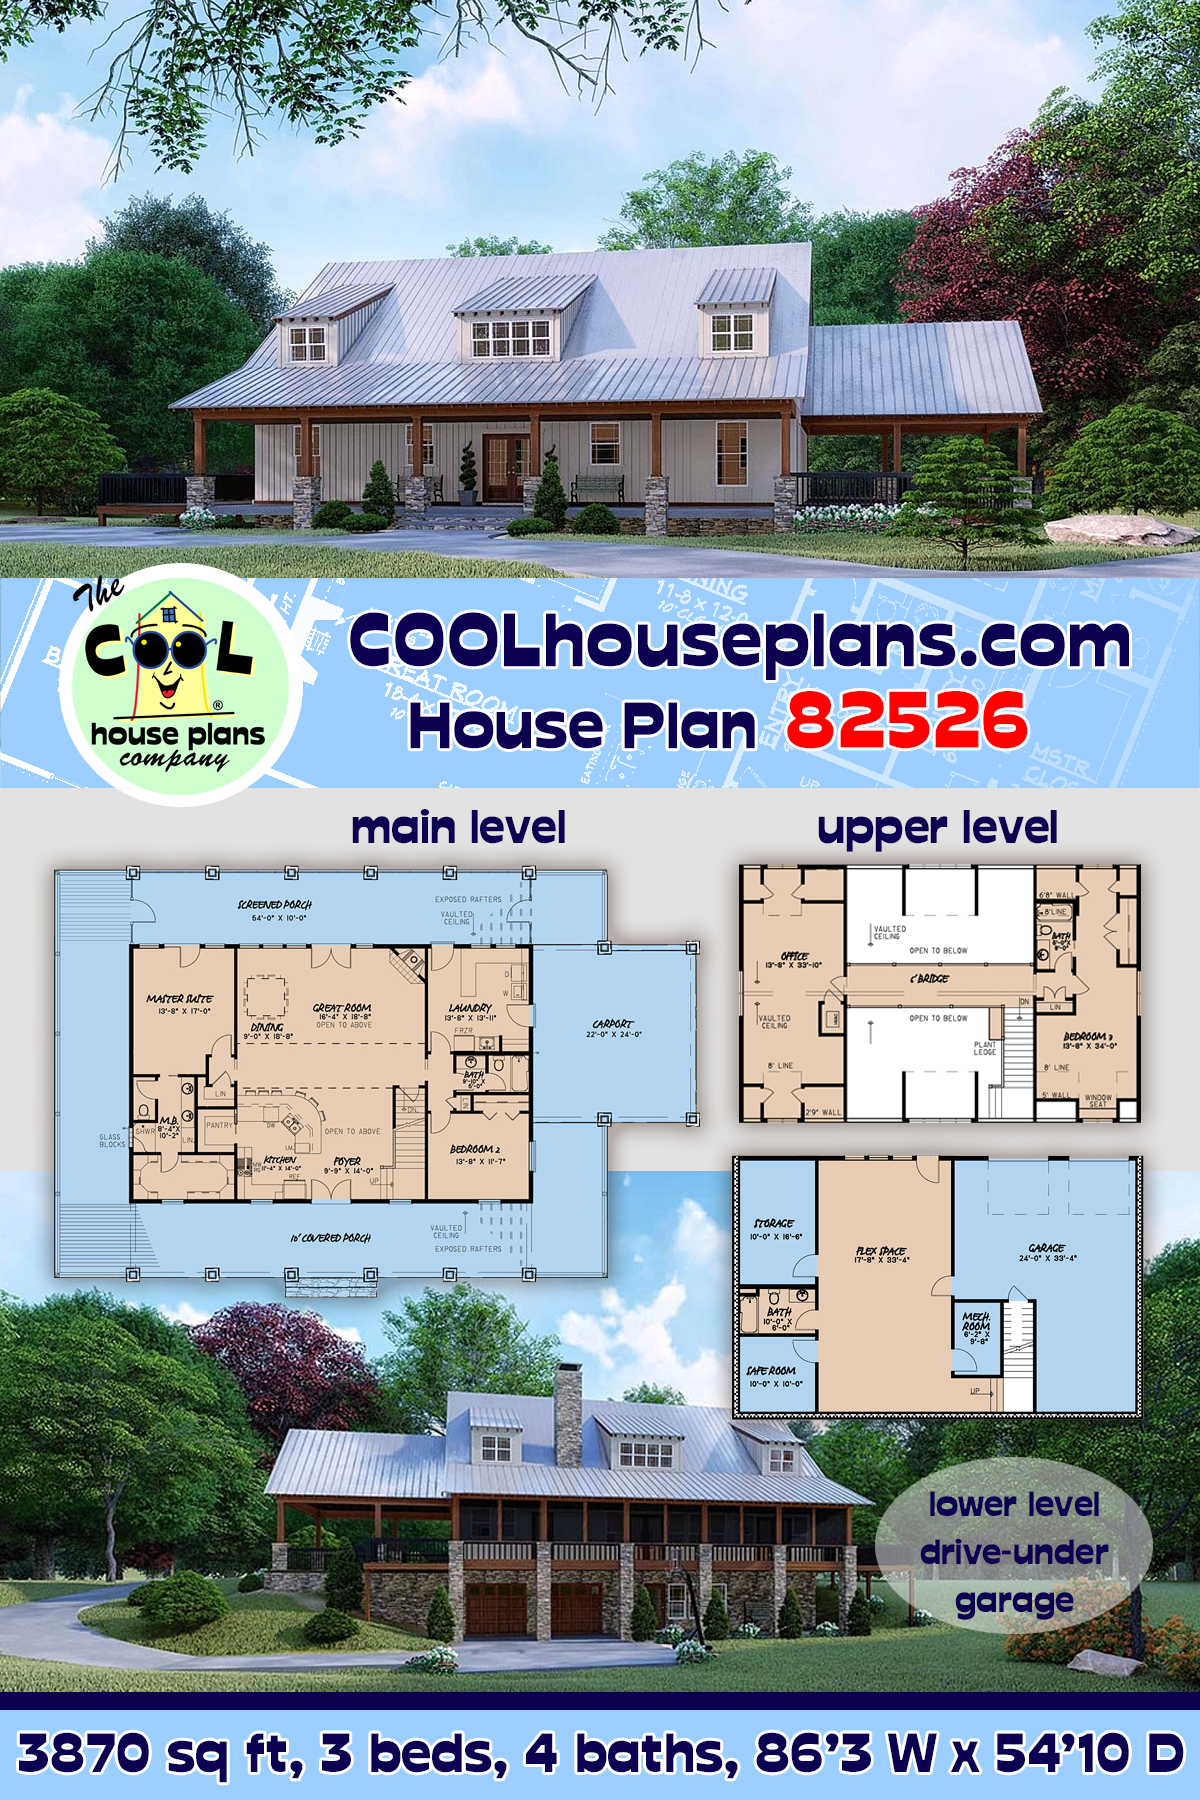 Farmhouse House Plan 82526 with 3 Beds, 4 Baths, 2 Car Garage